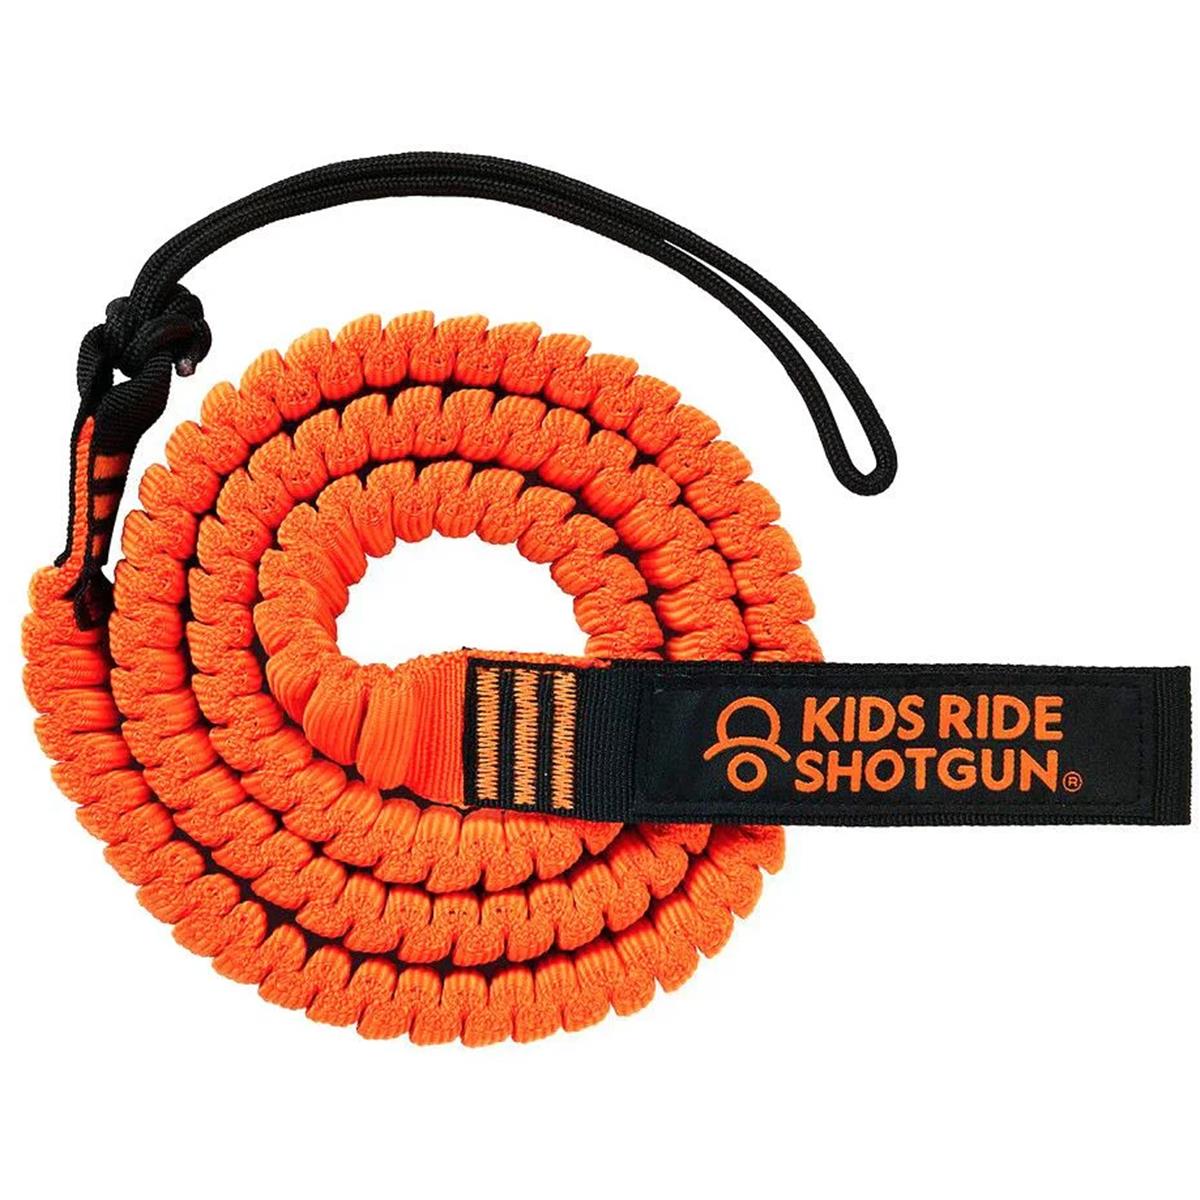 Shotgun Abschlepp Bungee Tow Rope Orange